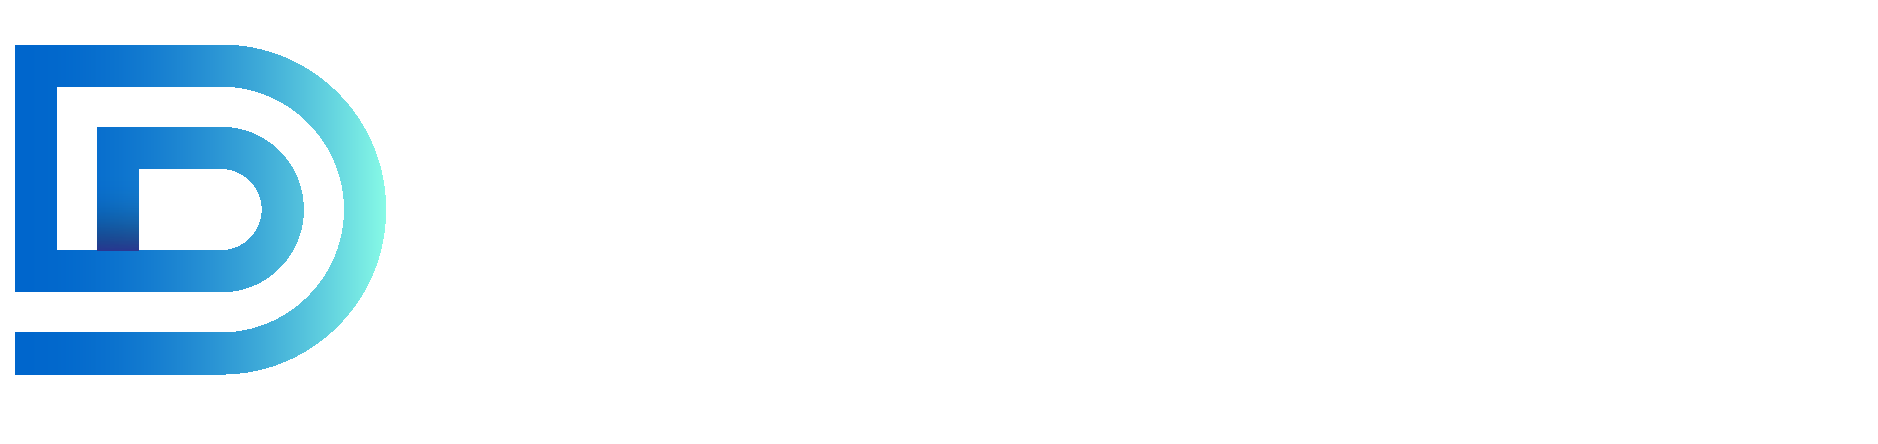 Daniele Damiani Psicologo Psicoterapeuta